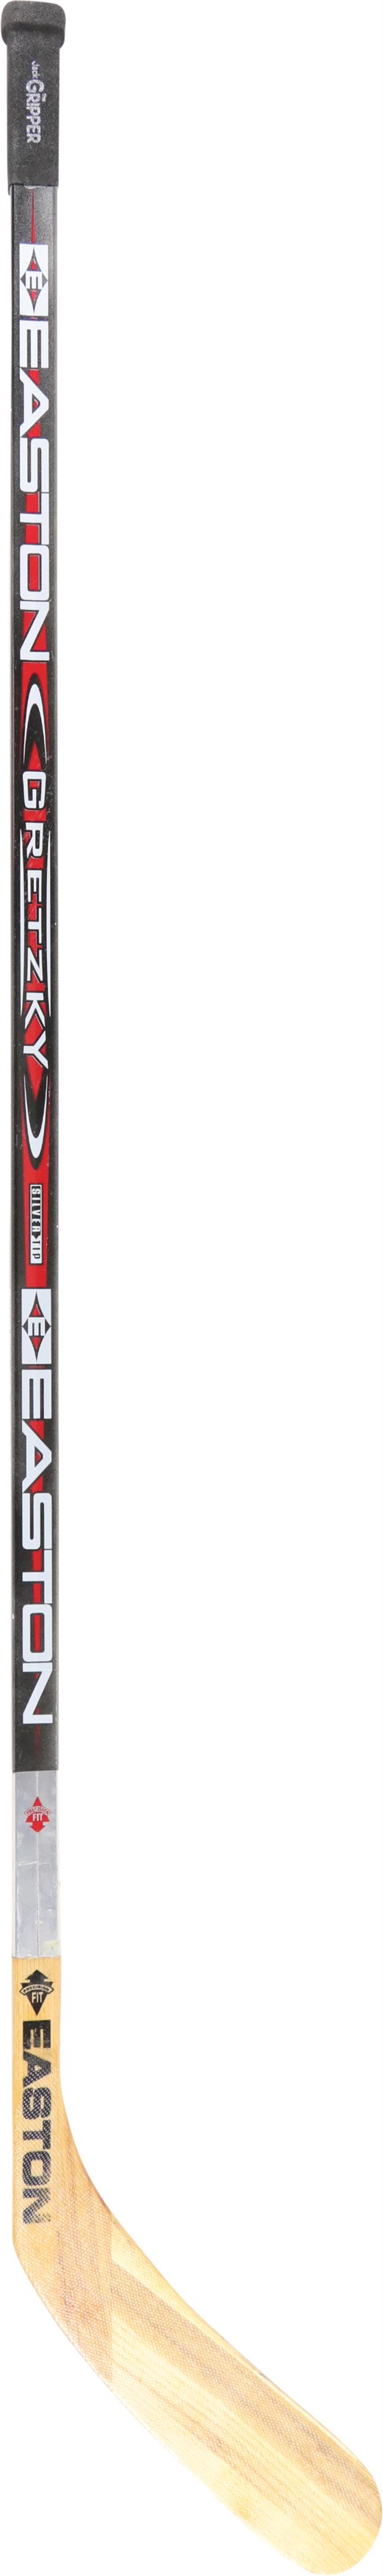 Wayne Gretzky Game Used Easton Aluminum Stick